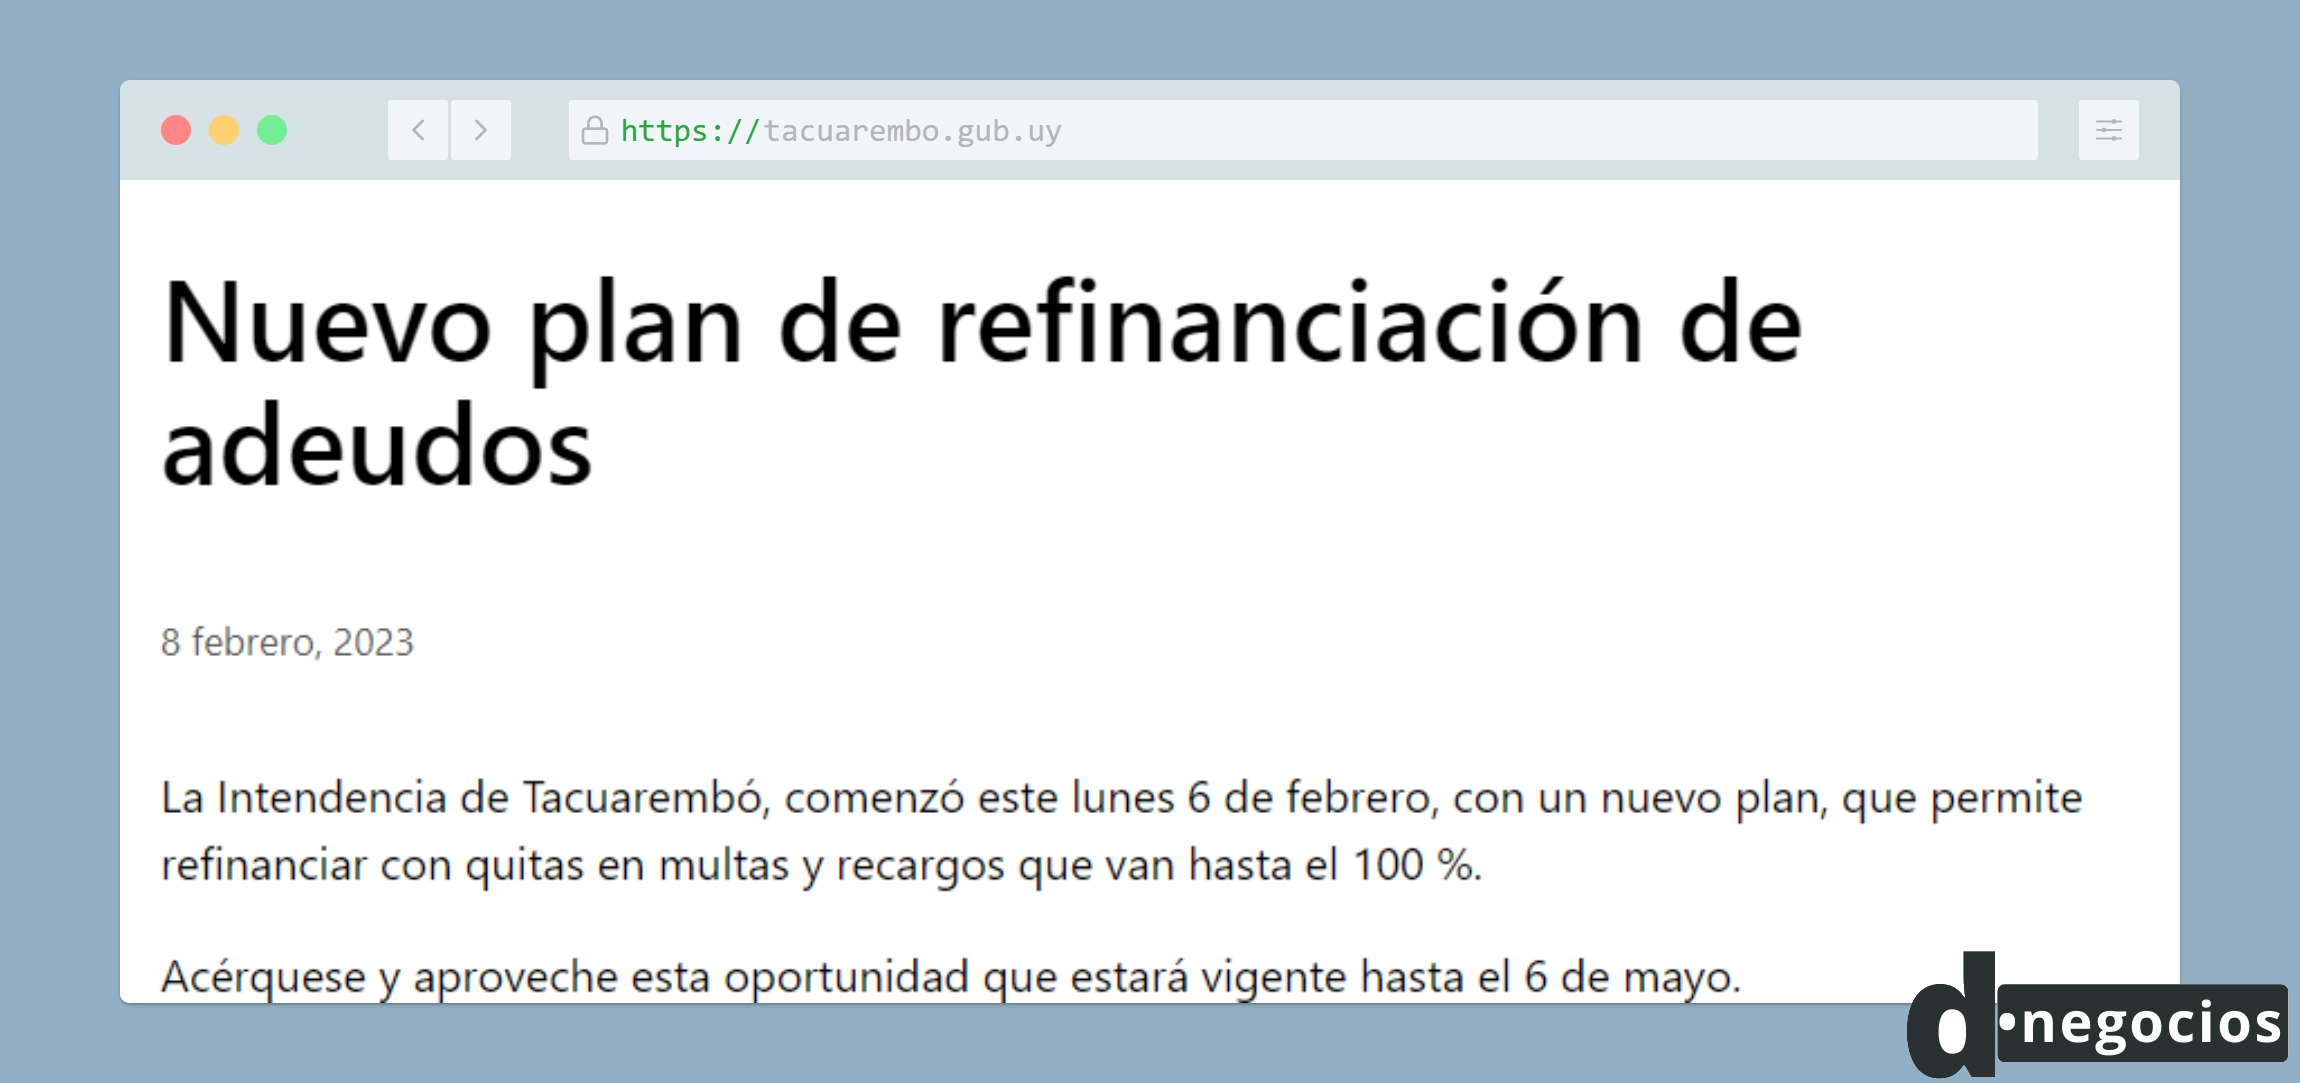 Comunicado del Plan de refinanciación de adeudos de Tacuarembó.